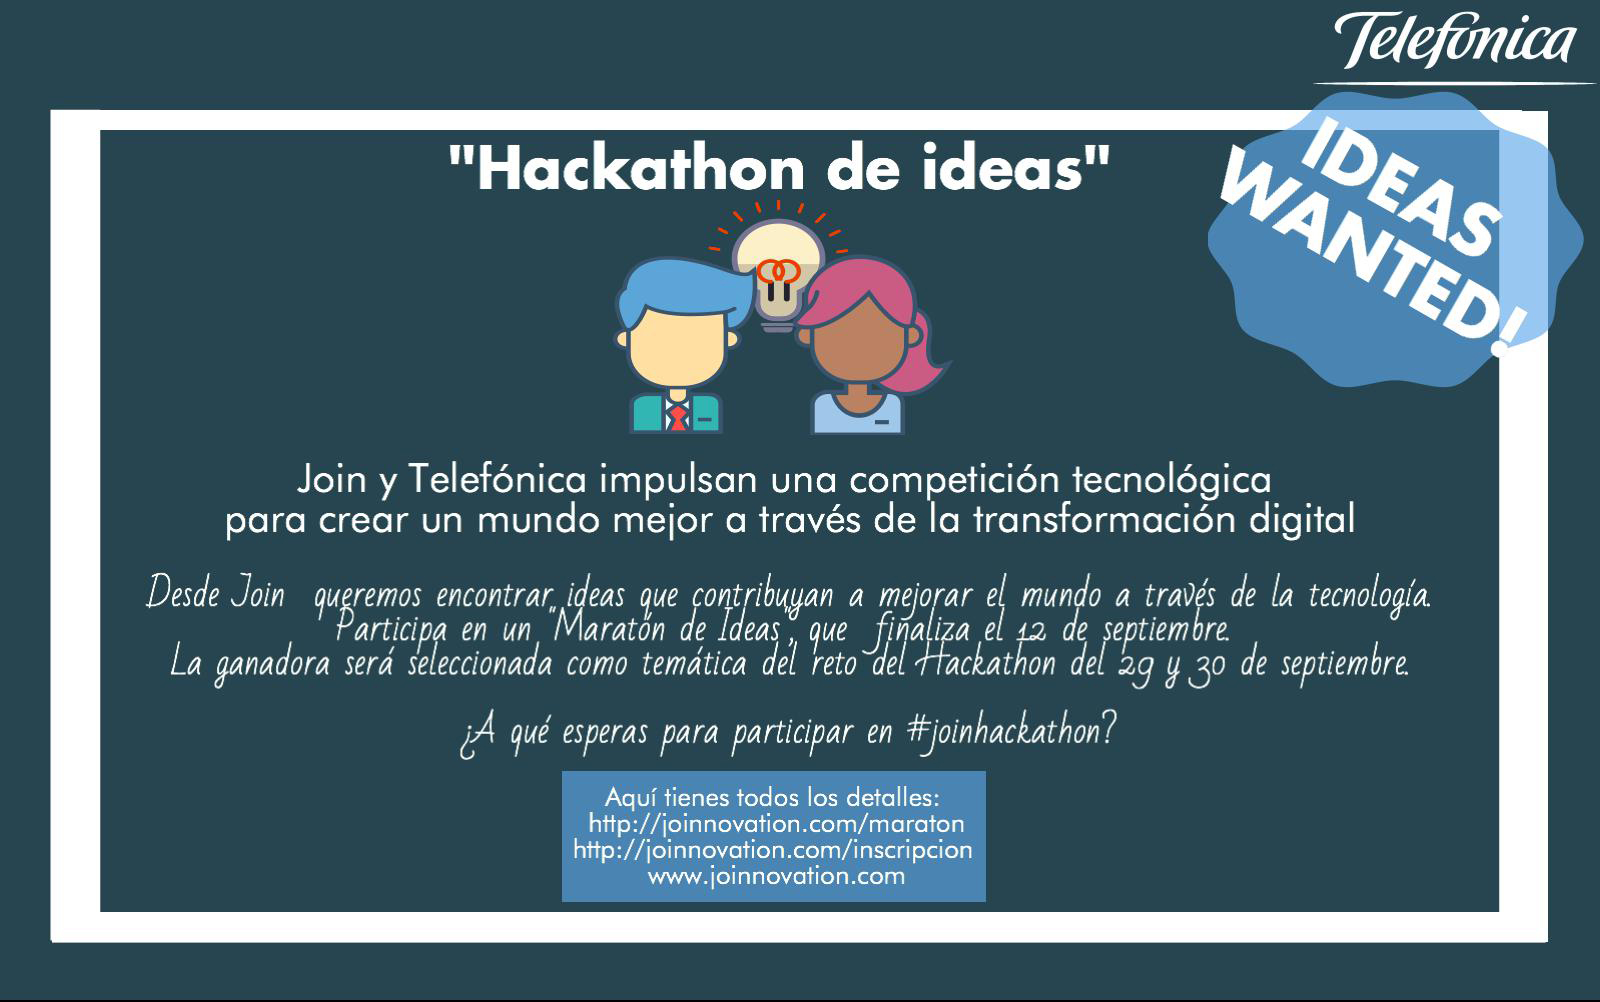 Telefónica convoca un hackathon de ideas para impulsar la transformación digital a través del talento joven